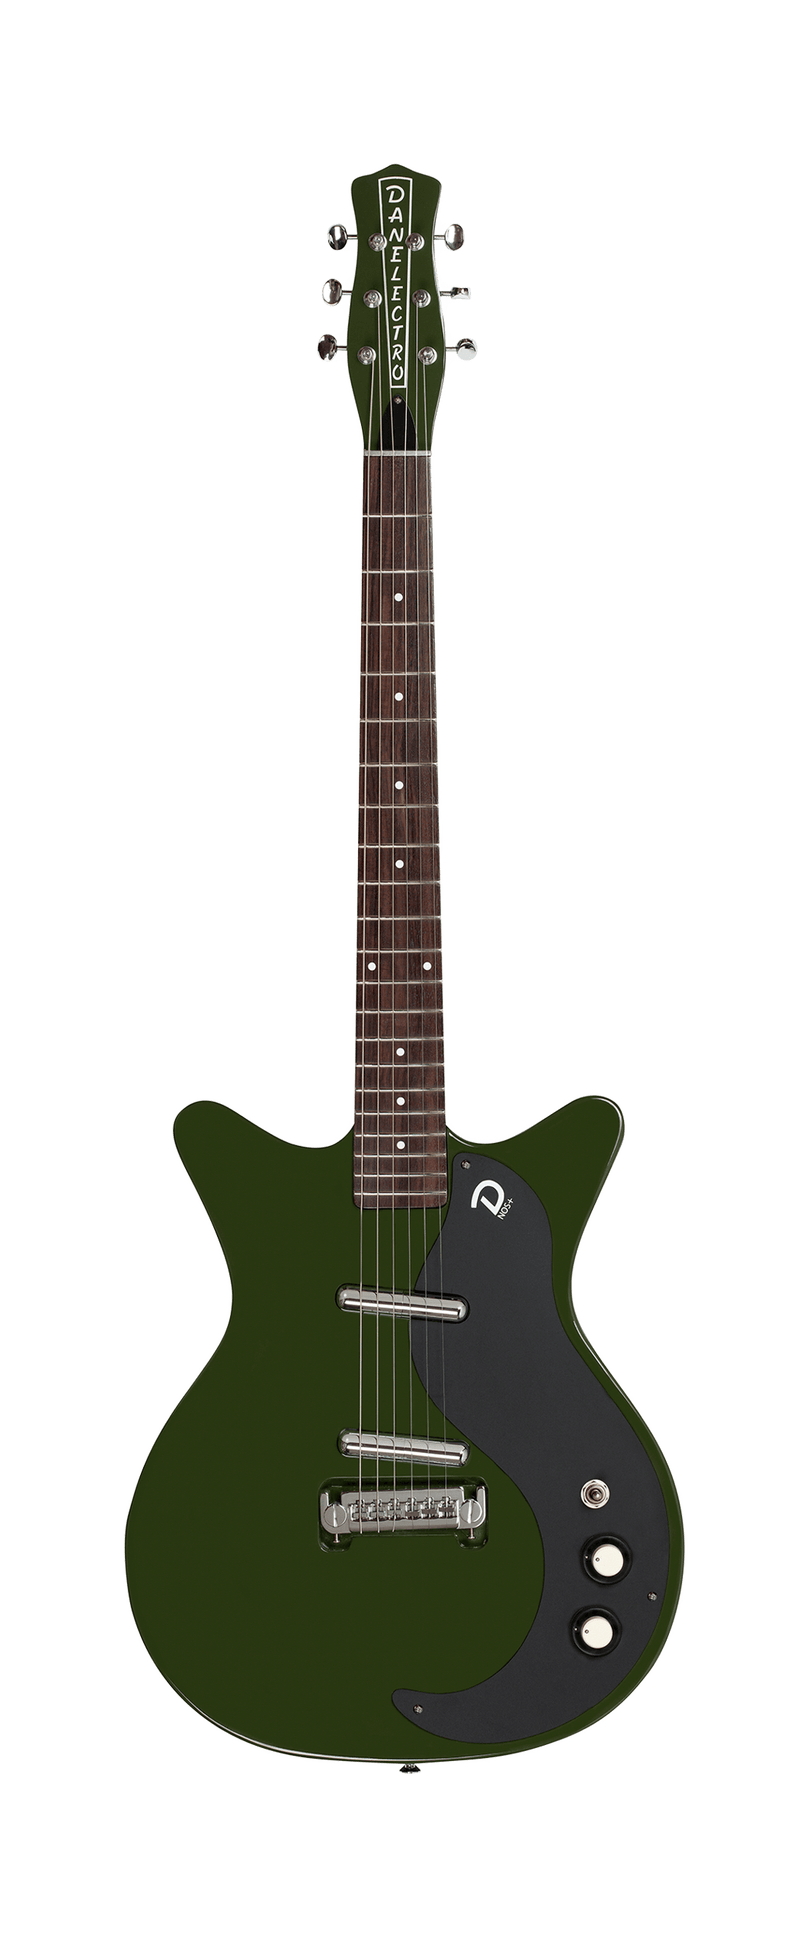 Danelectro D59BO-GN 59 Guitare électrique semi-creuse Black Out (Green Envy)